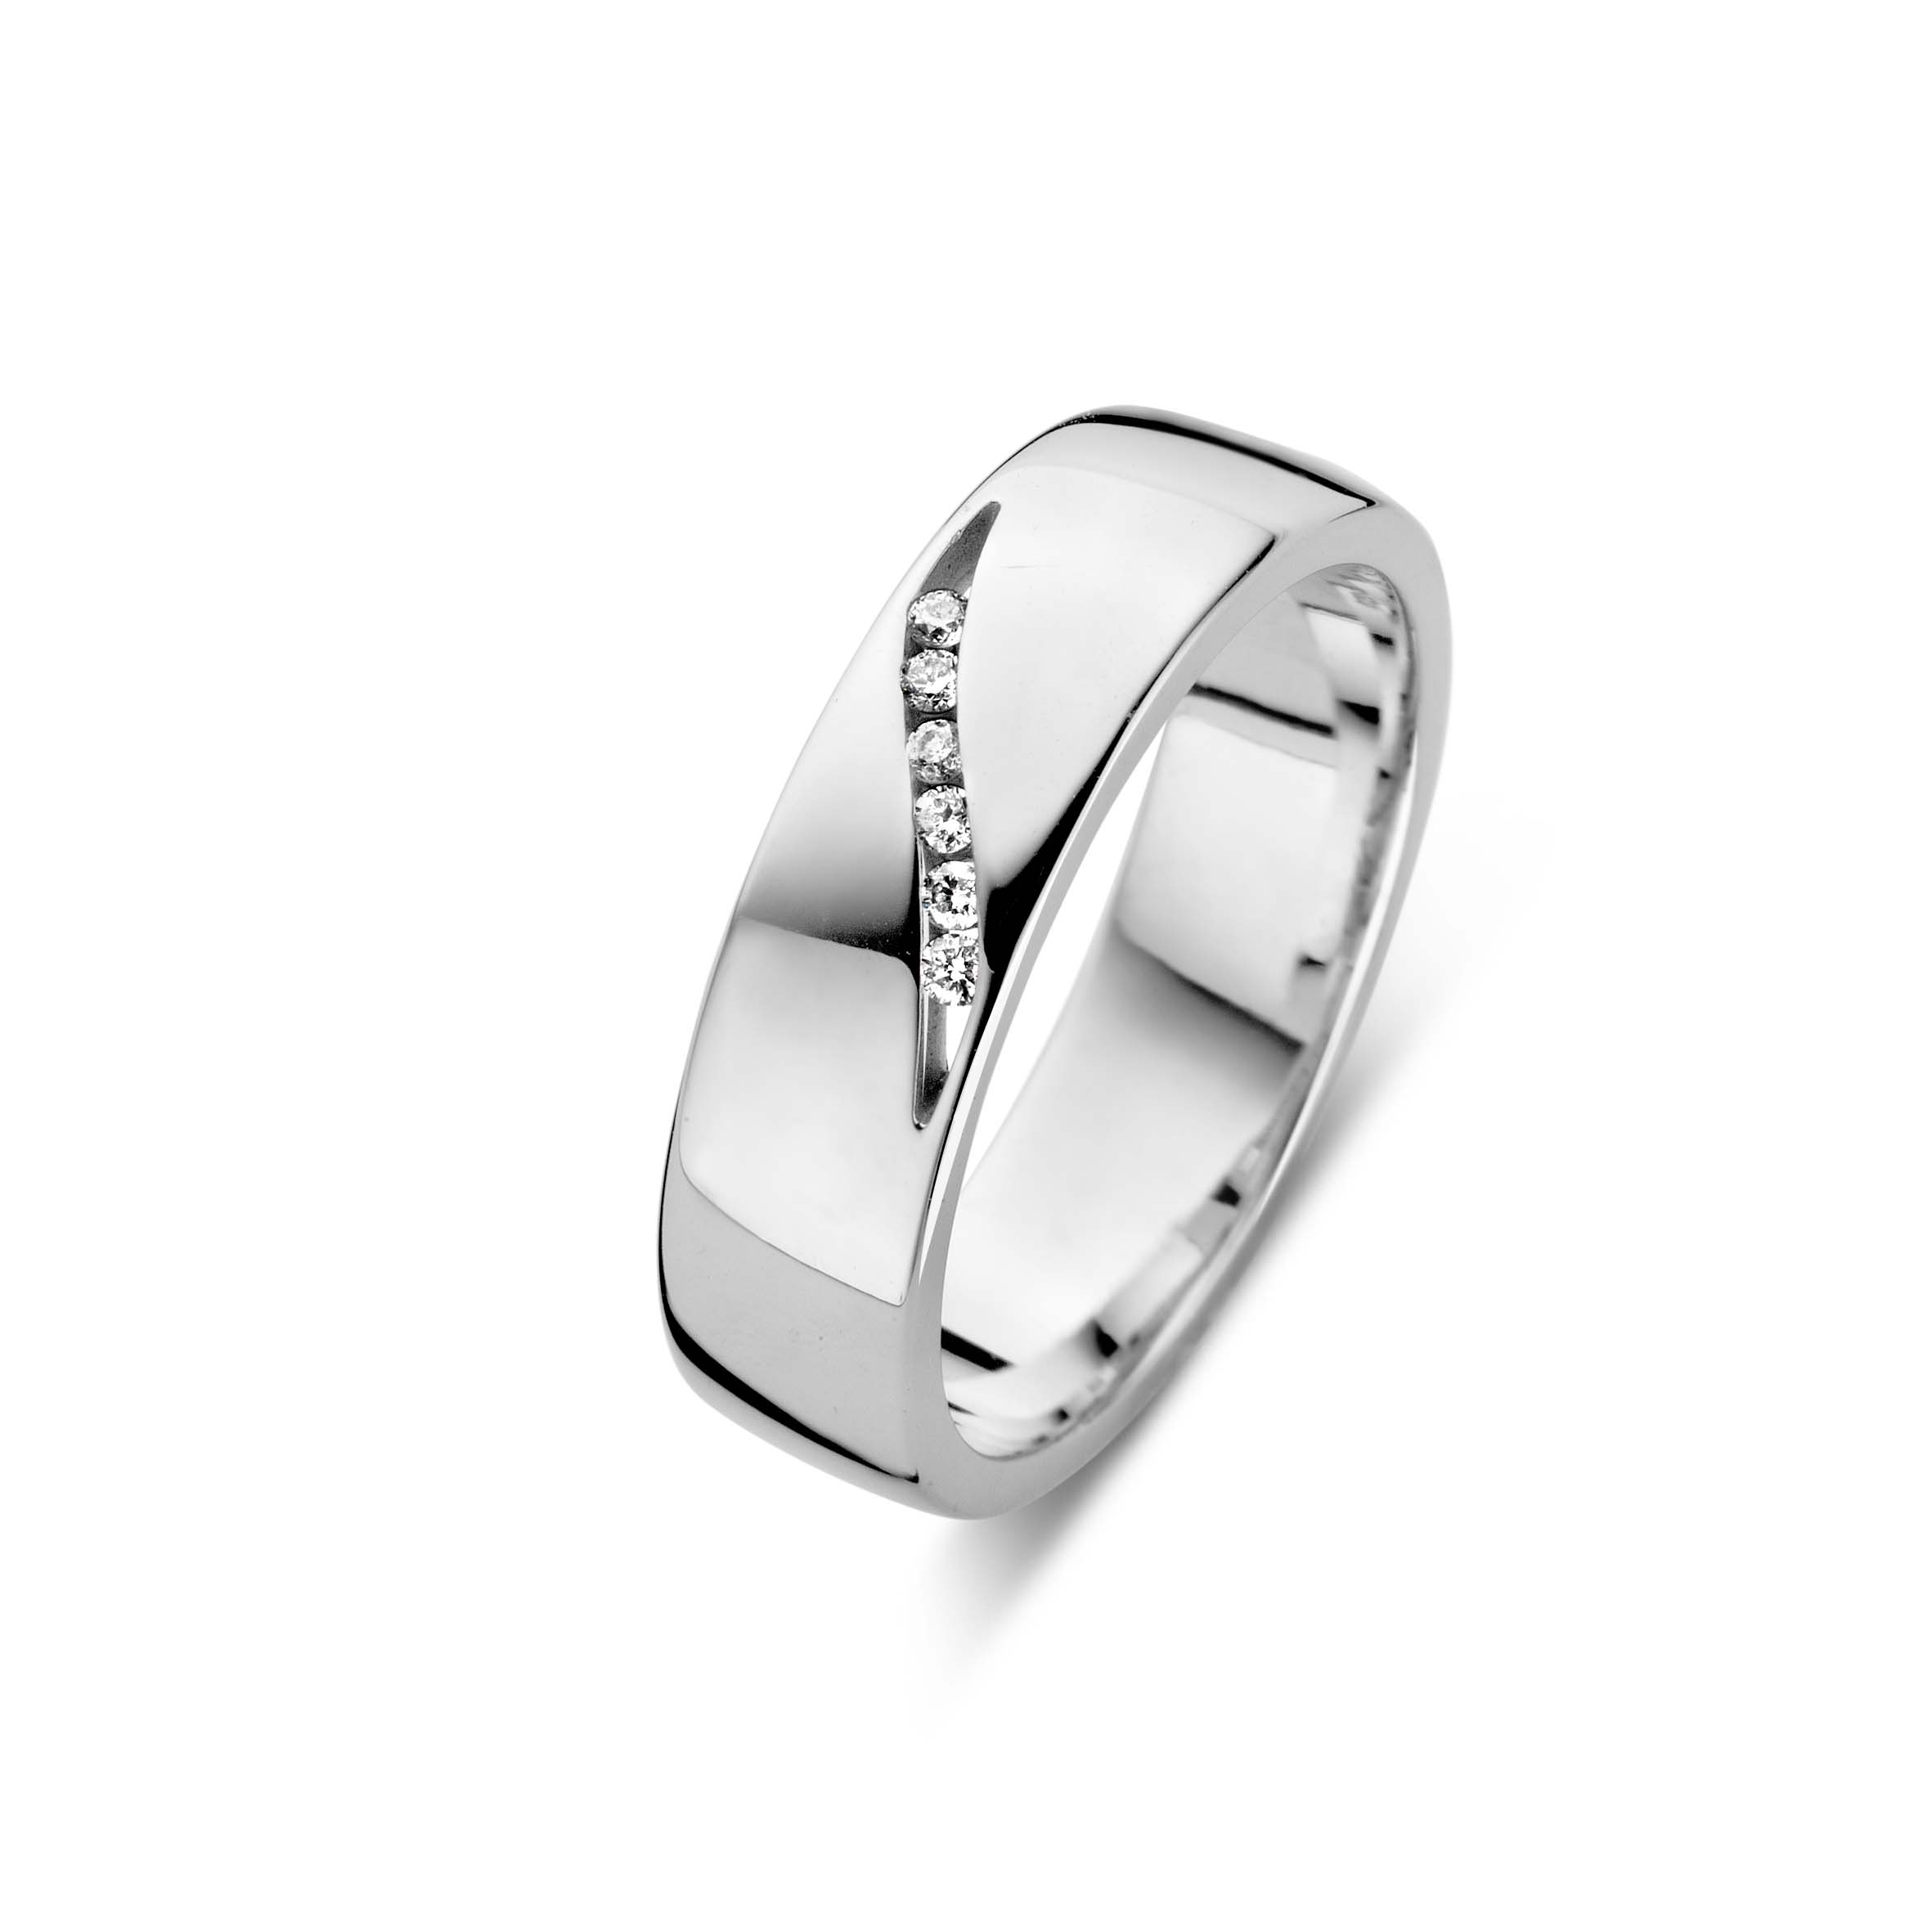 Regeneratief Begrijpen domesticeren Forever Yours zilveren ring met grotere diamant - Juwelier Sjaak knijn